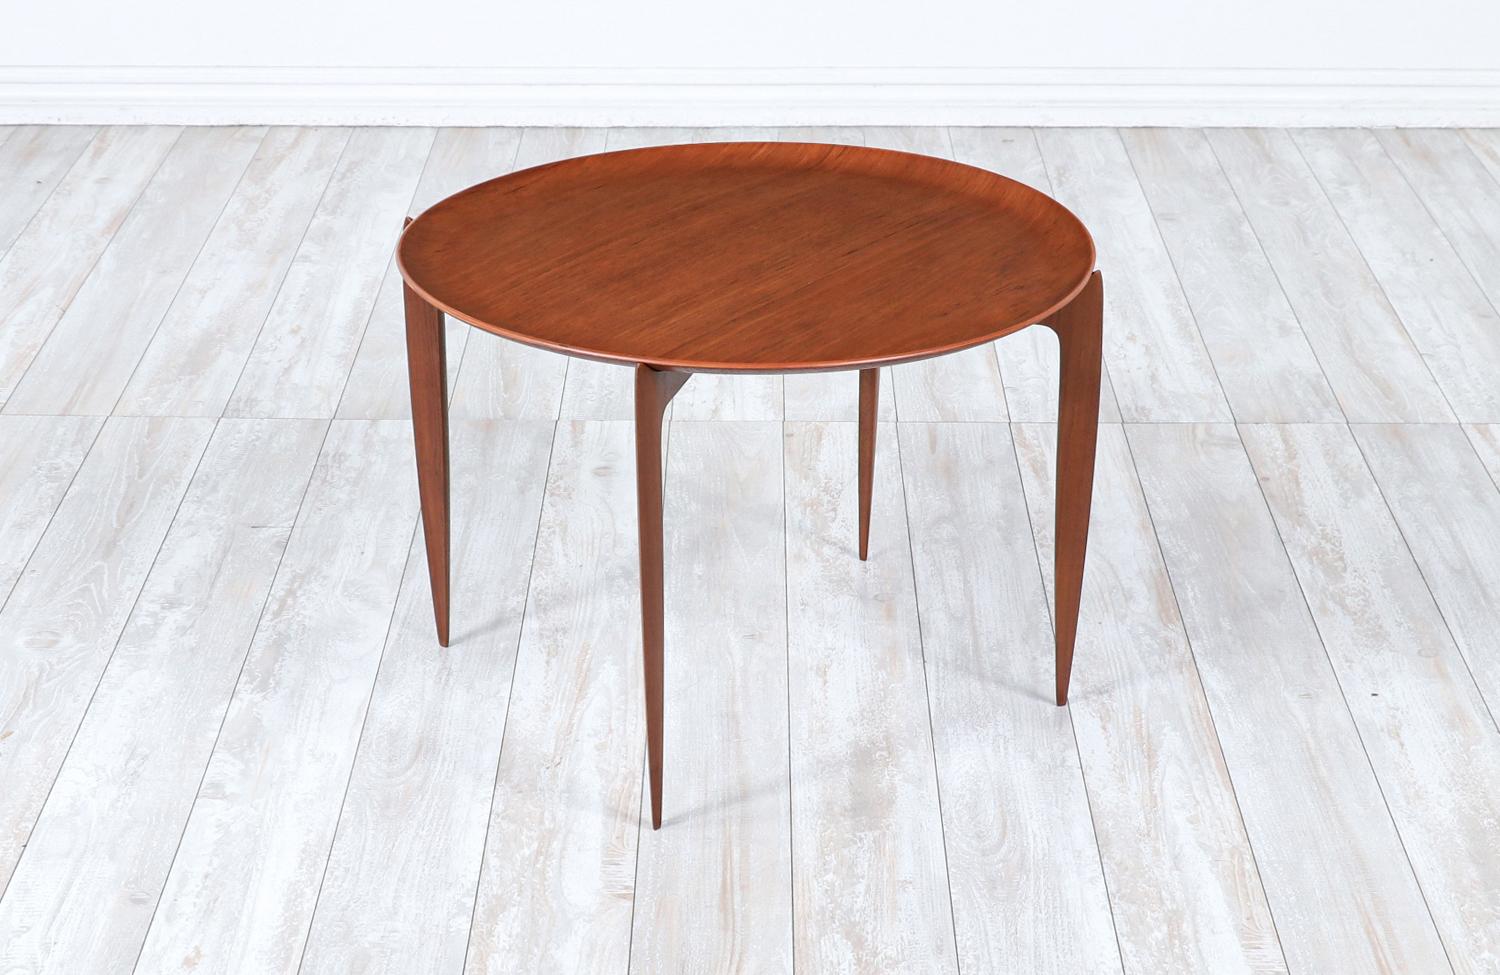 Vielseitiger Danish Modern Tabletttisch, entworfen von H. Engholm & Svend Åge Willumsen für Fritz Hansen in Dänemark um 1950. Dieses außergewöhnliche und praktische Tischdesign besteht aus einem skulpturalen Teakholzsockel mit einem Spinnenfuß und